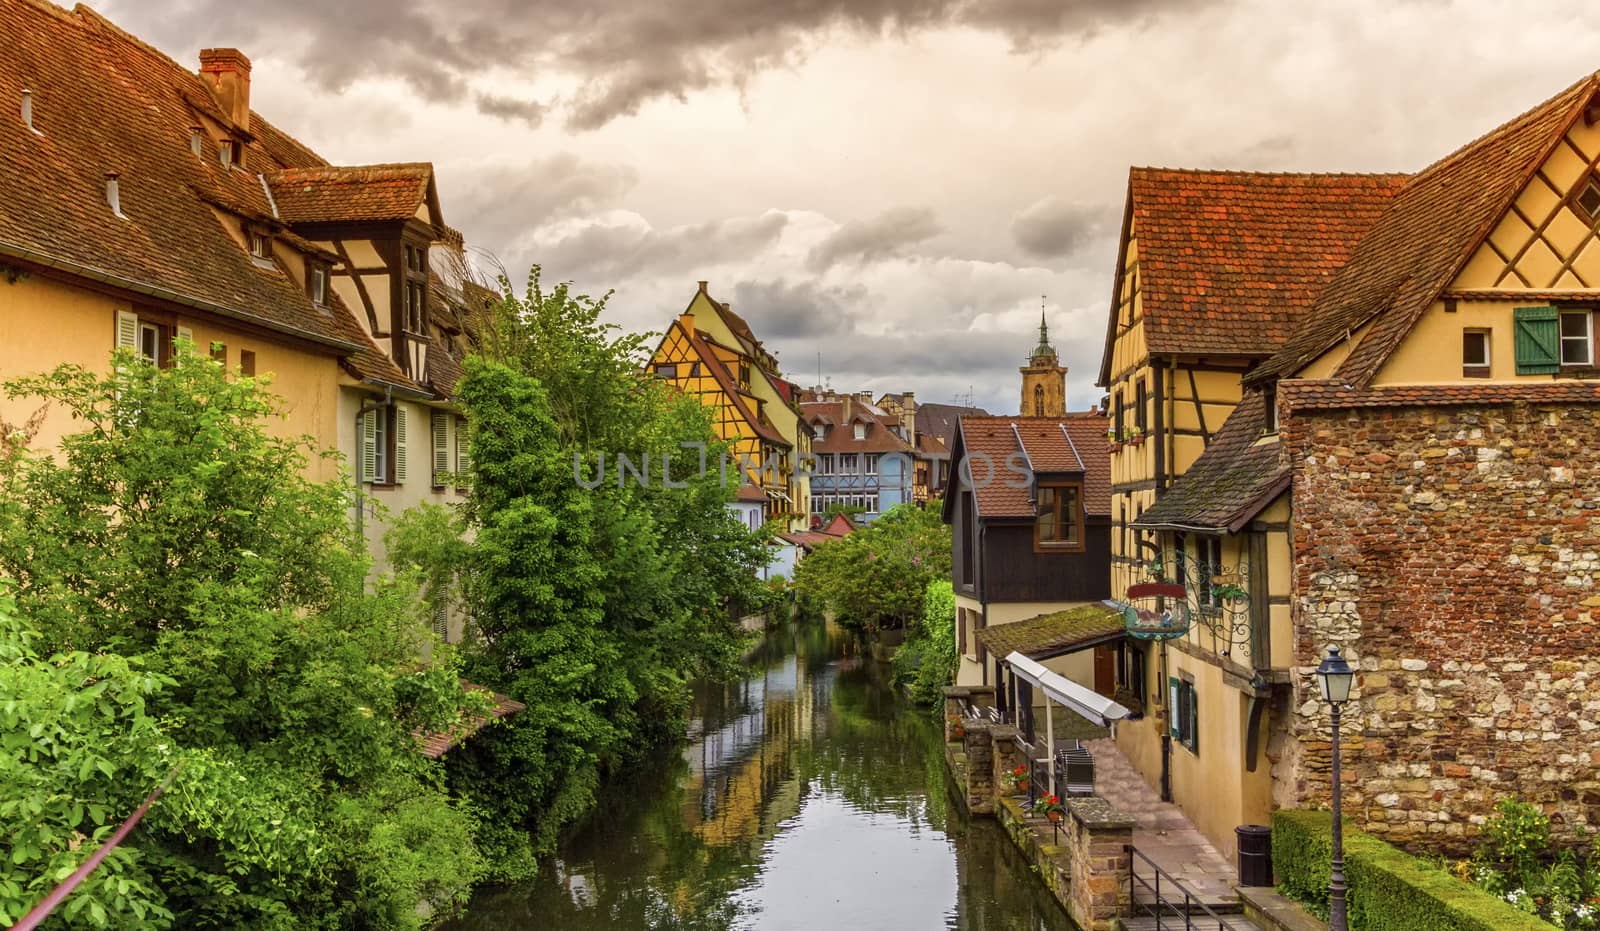 Little Venice, petite Venise, in Colmar, Alsace, France by Elenaphotos21